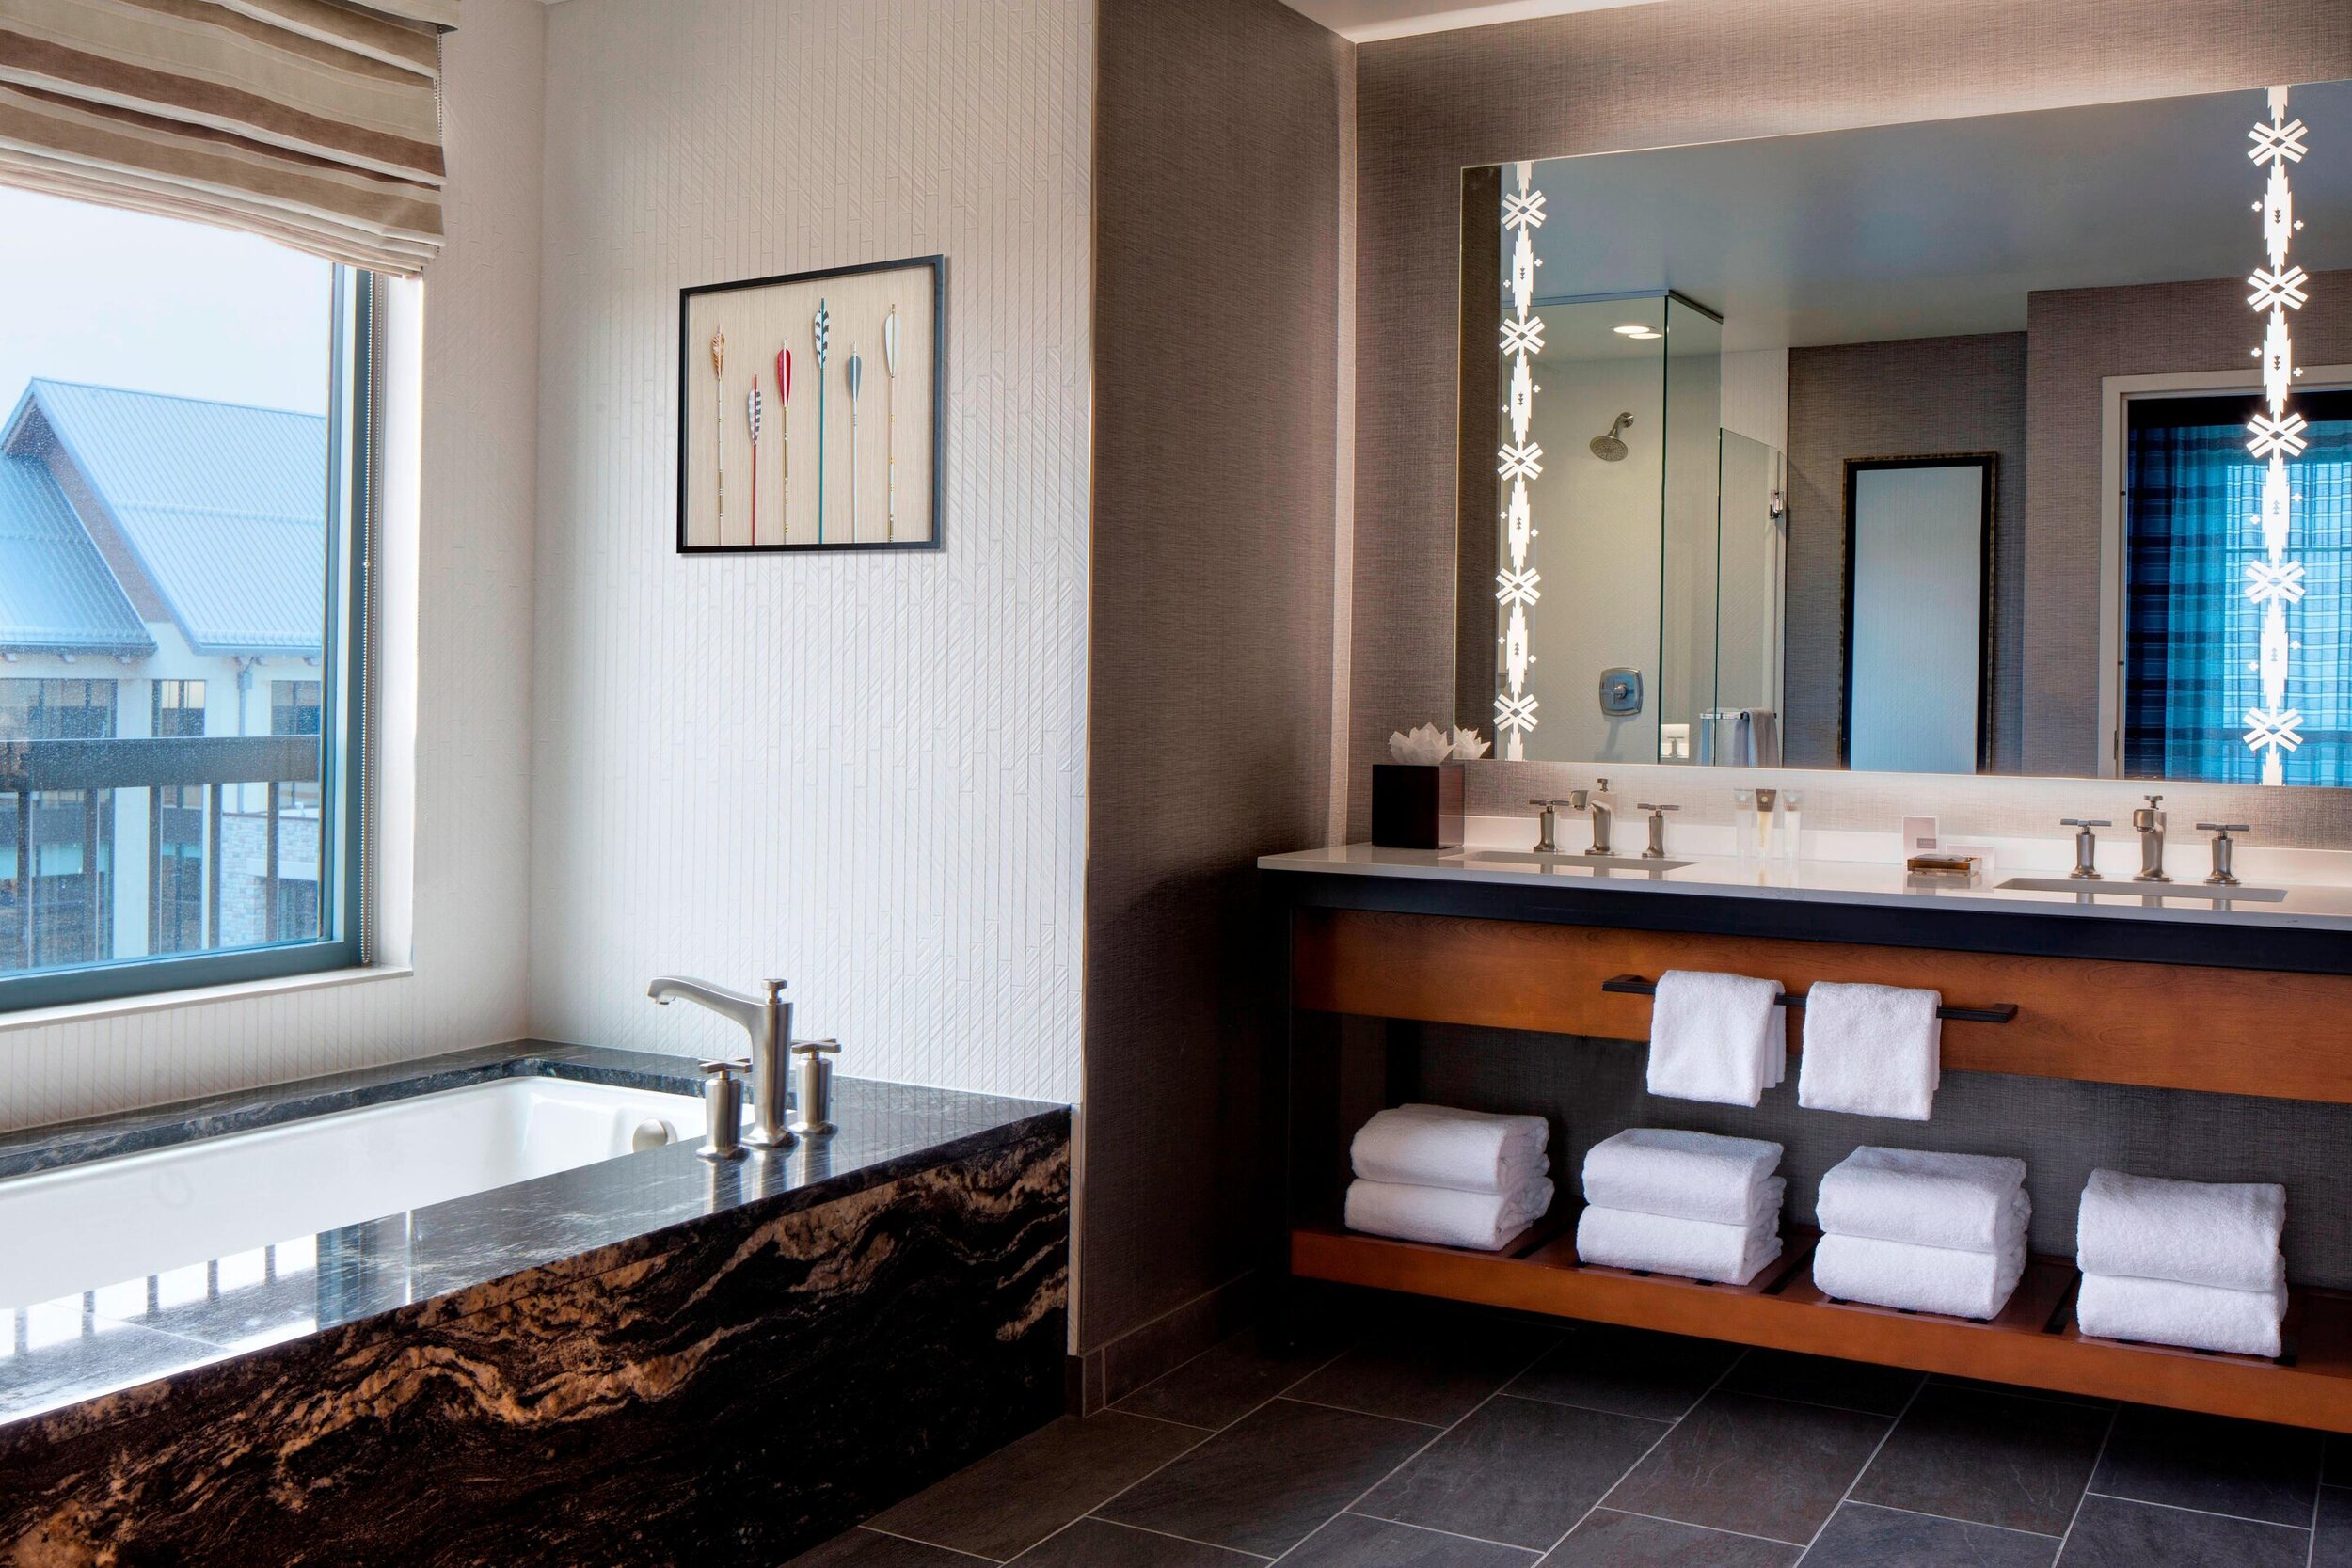 Bathroom of Deluxe Suite at Gaylord Rockies Resort - Aurora, Colorado near Denver